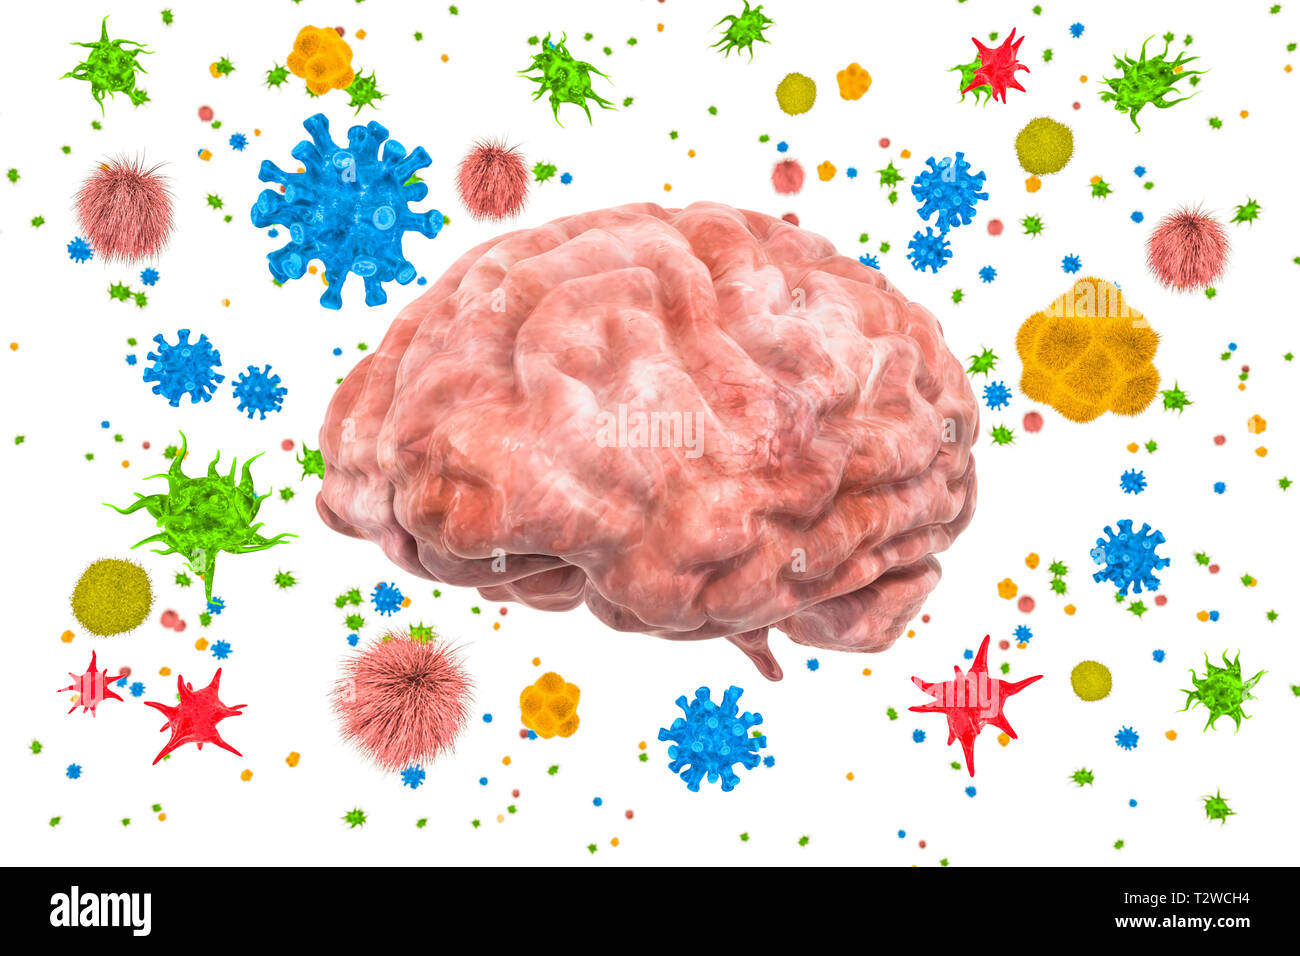 Cerveau avec les virus et bactéries. Maladies du cerveau, rendu 3D concept isolé sur fond blanc Banque D'Images